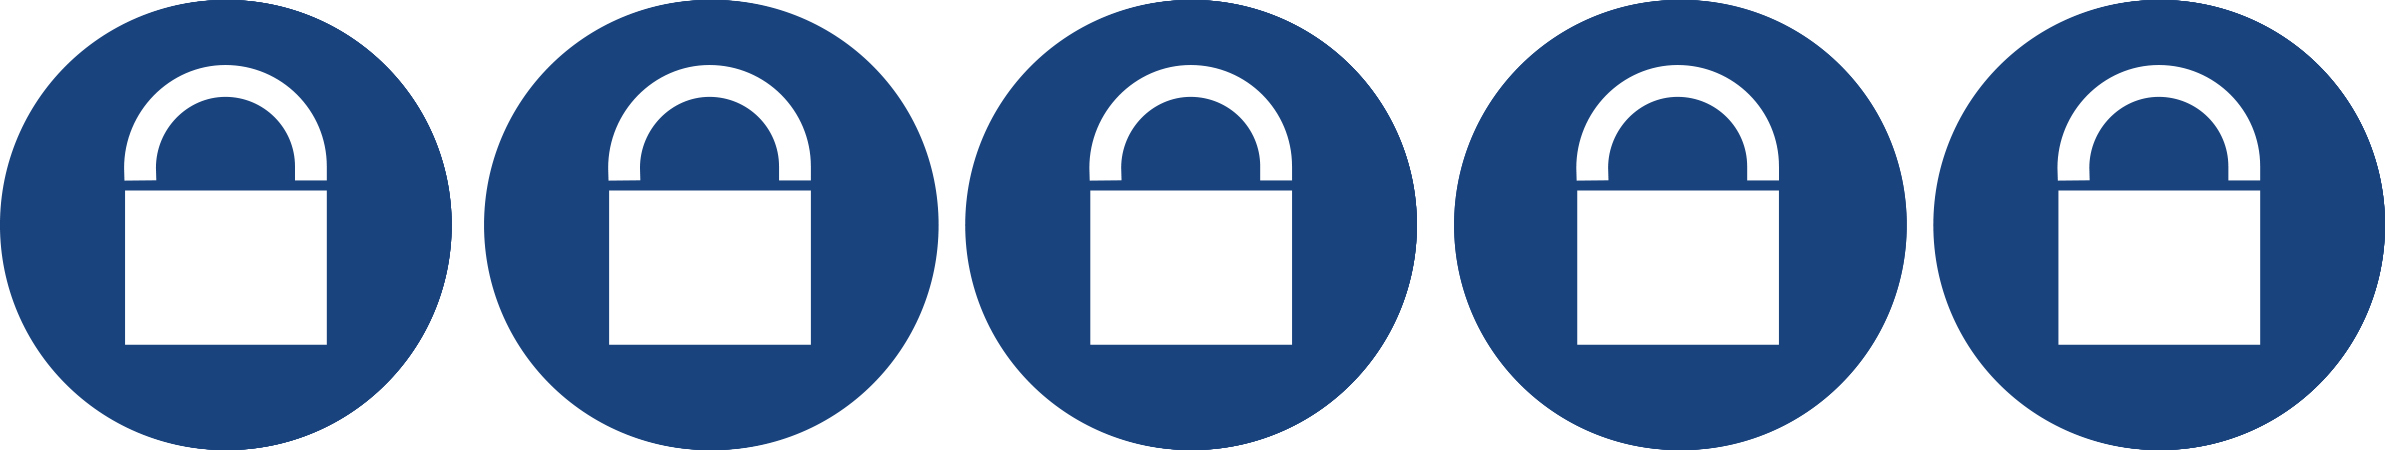 Classification de sécurité Viro https://www.viro.it/files/immagini/2RuoteFR.jpg _blank